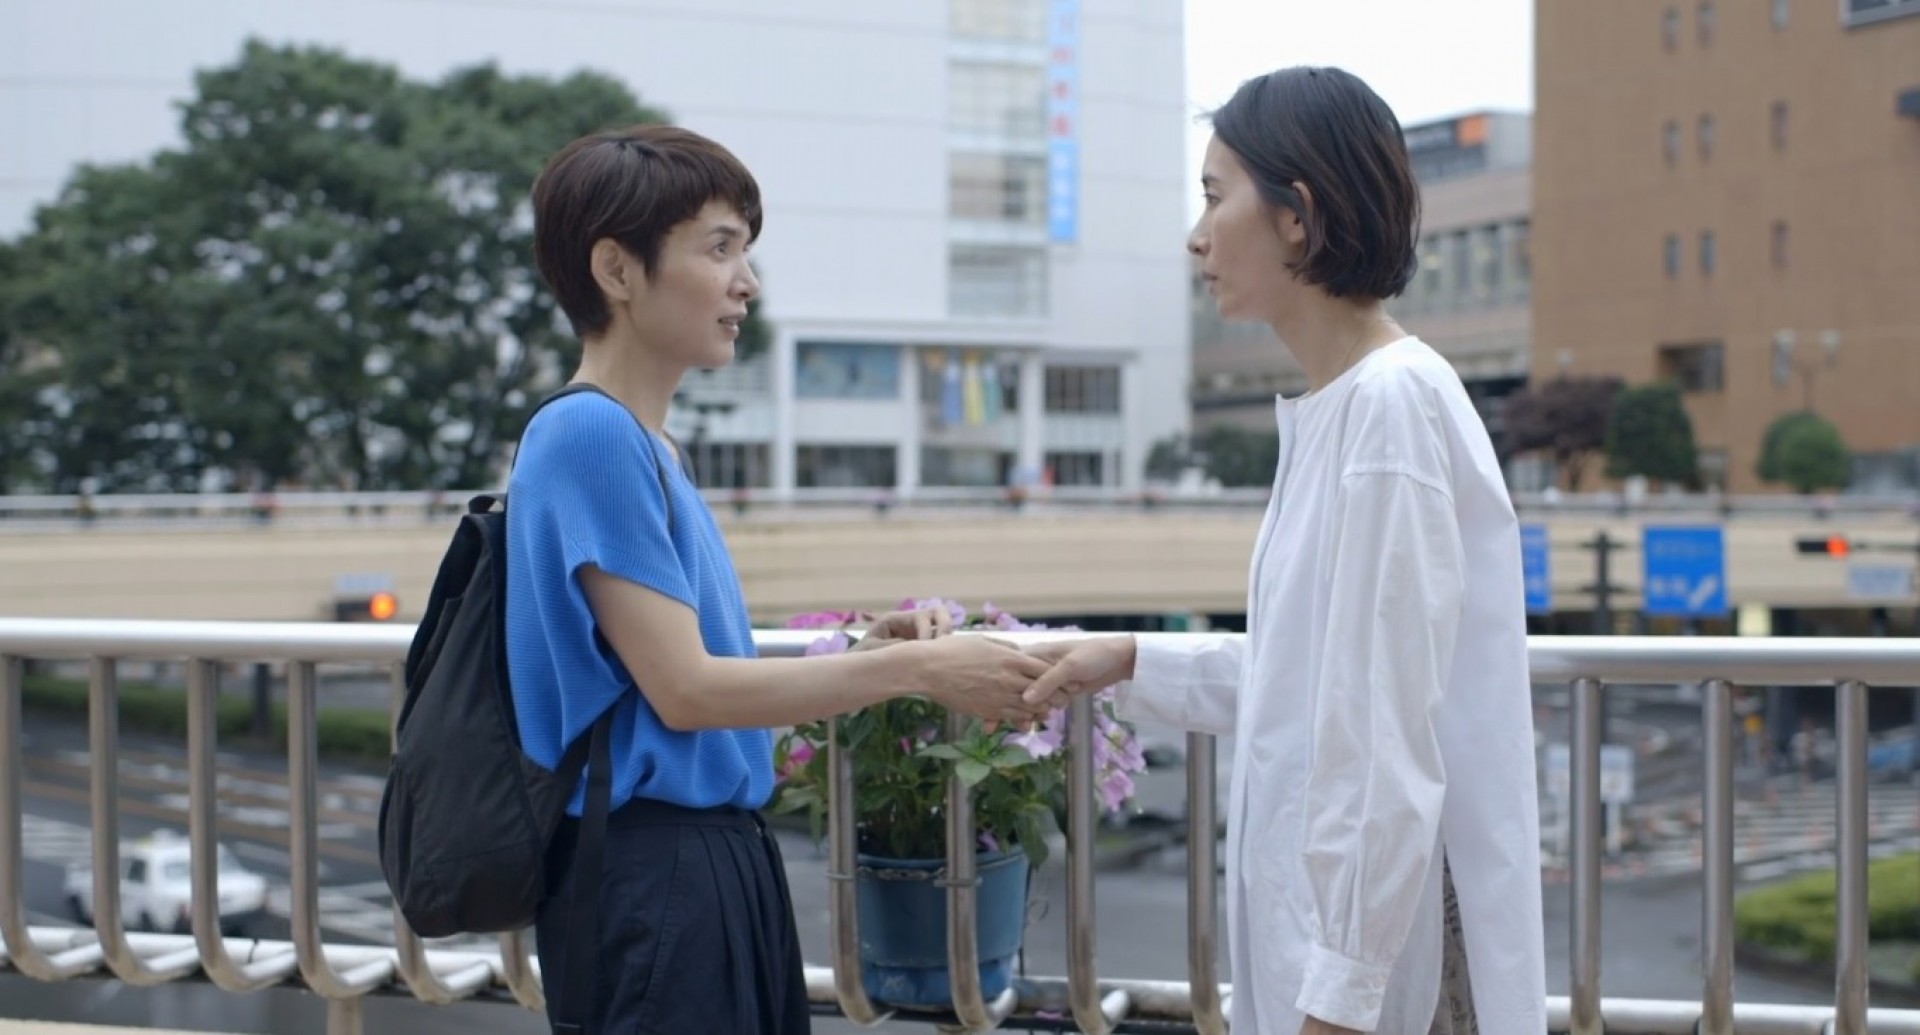 Último e melhor segmento de 'Roda do Destino', 
'Outra Vez' mostra o reencontro por acaso de 
duas mulheres que acreditam serem amigas de escola (Foto: divulgação)